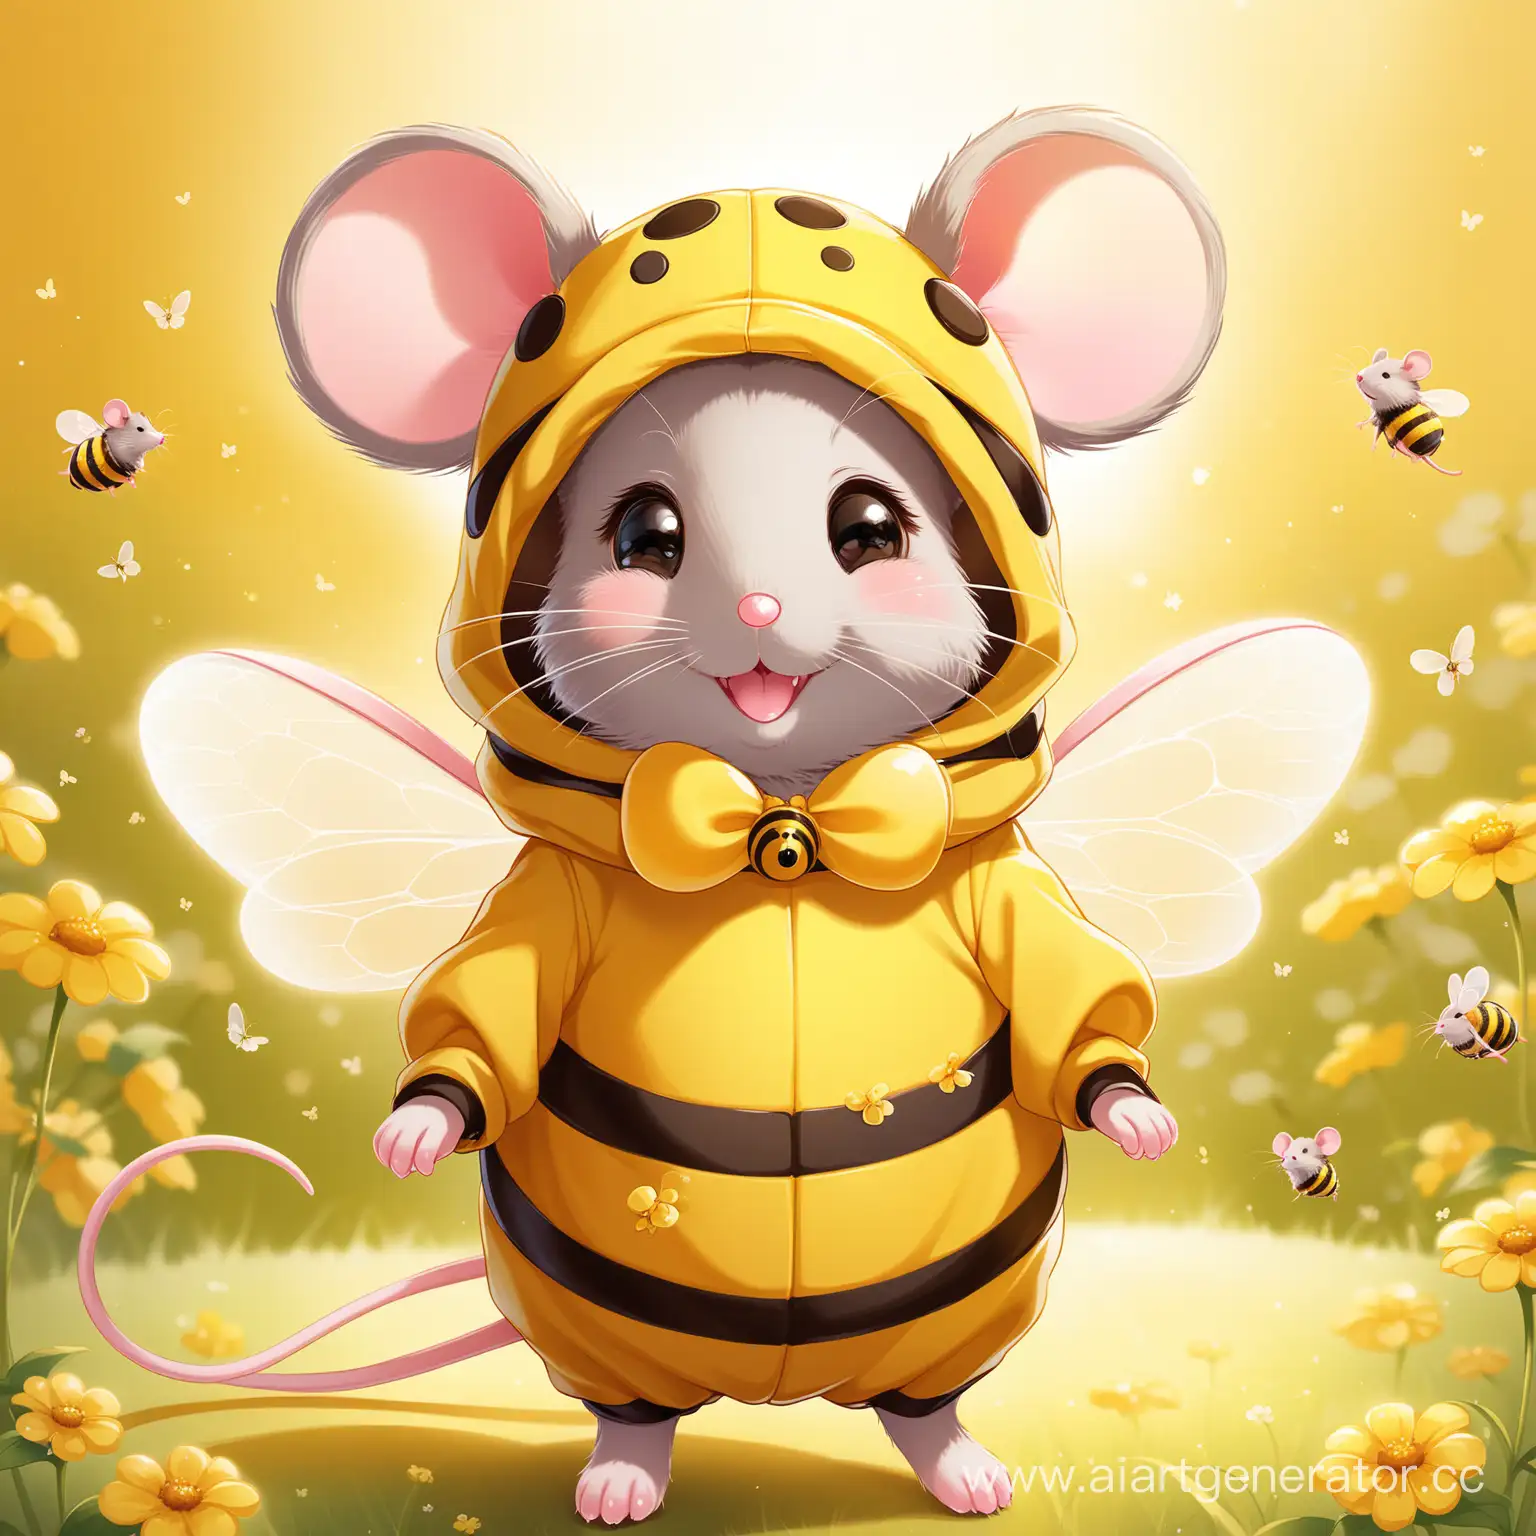 Милая мышь в костюме пчелы, нежные оттенки, хорошее качество 